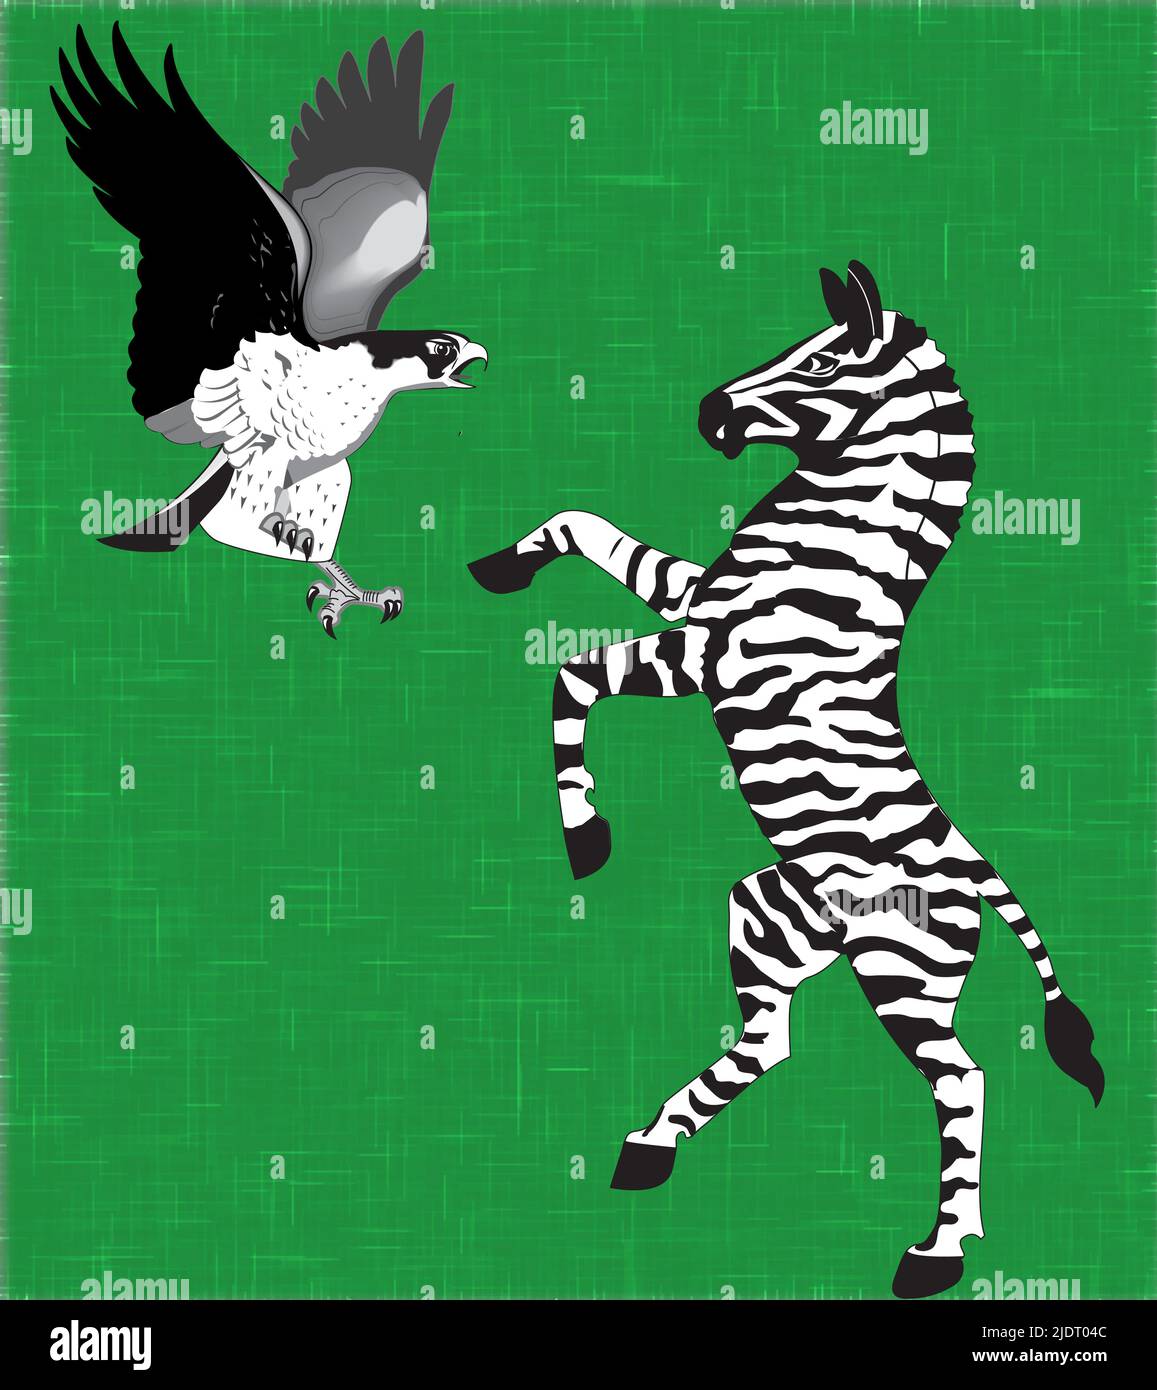 Hakw et zebra sont des combats. Illustration artistique Banque D'Images